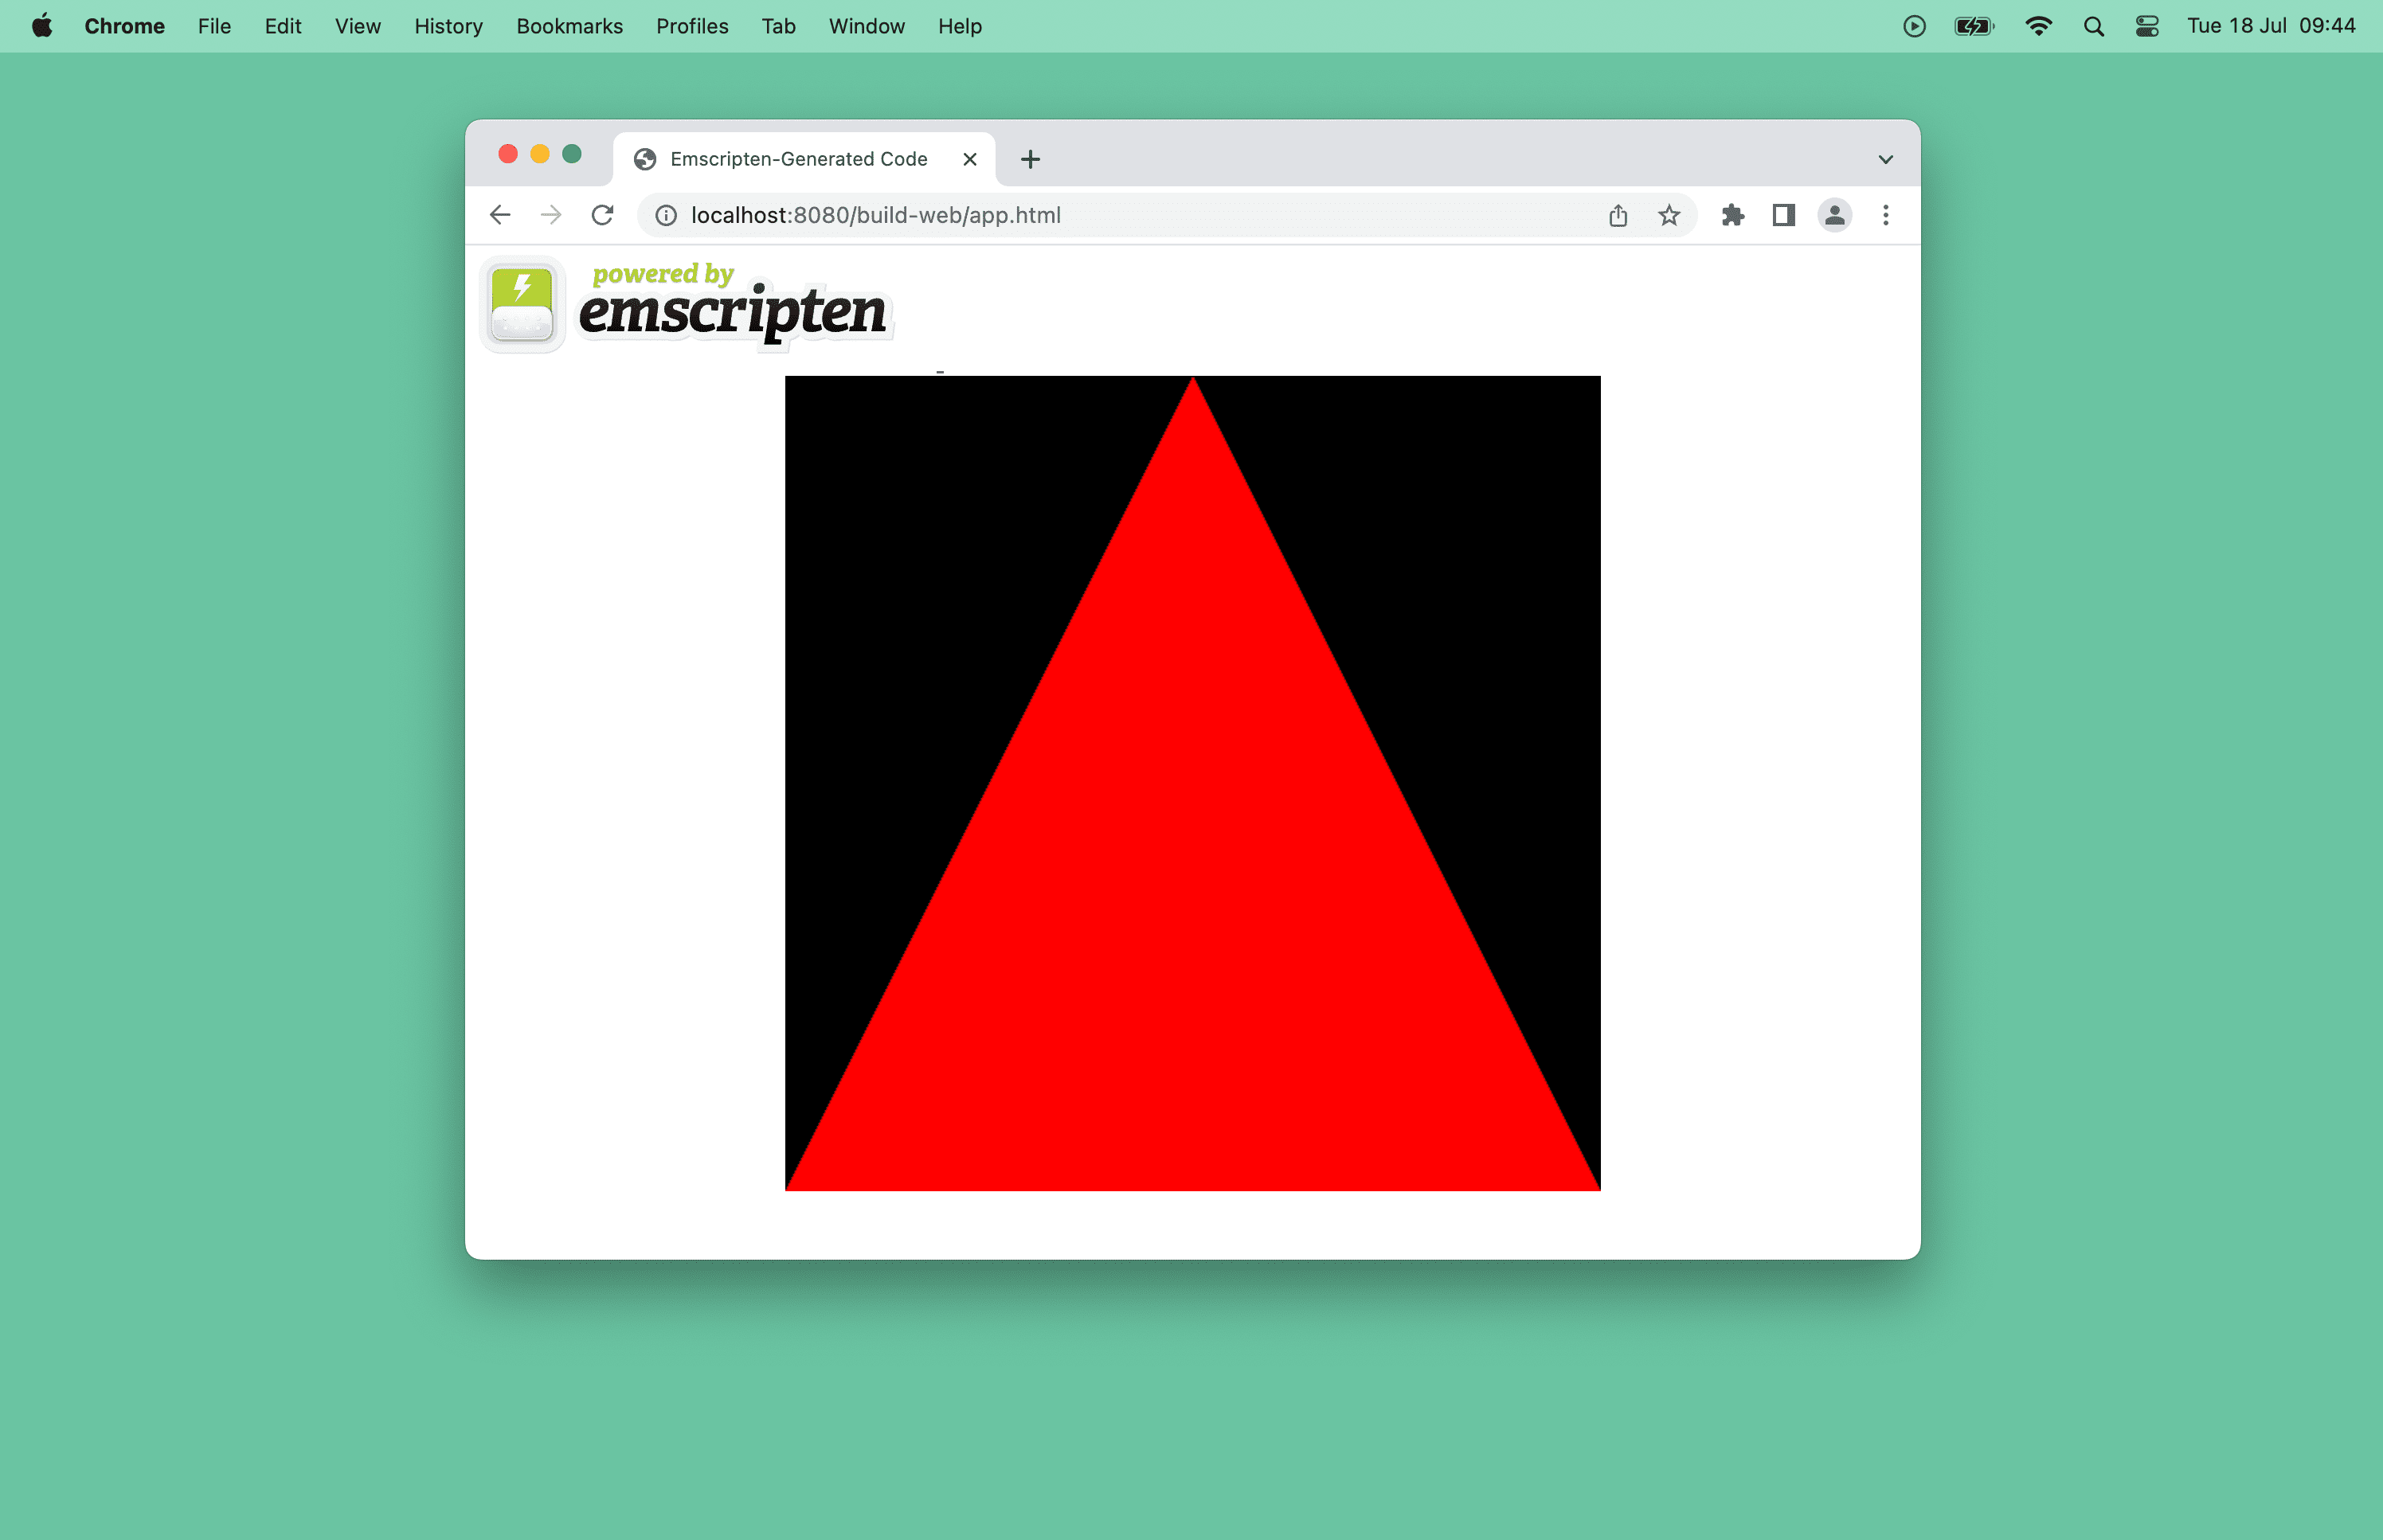 Screenshot eines roten Dreiecks in einem Browserfenster.